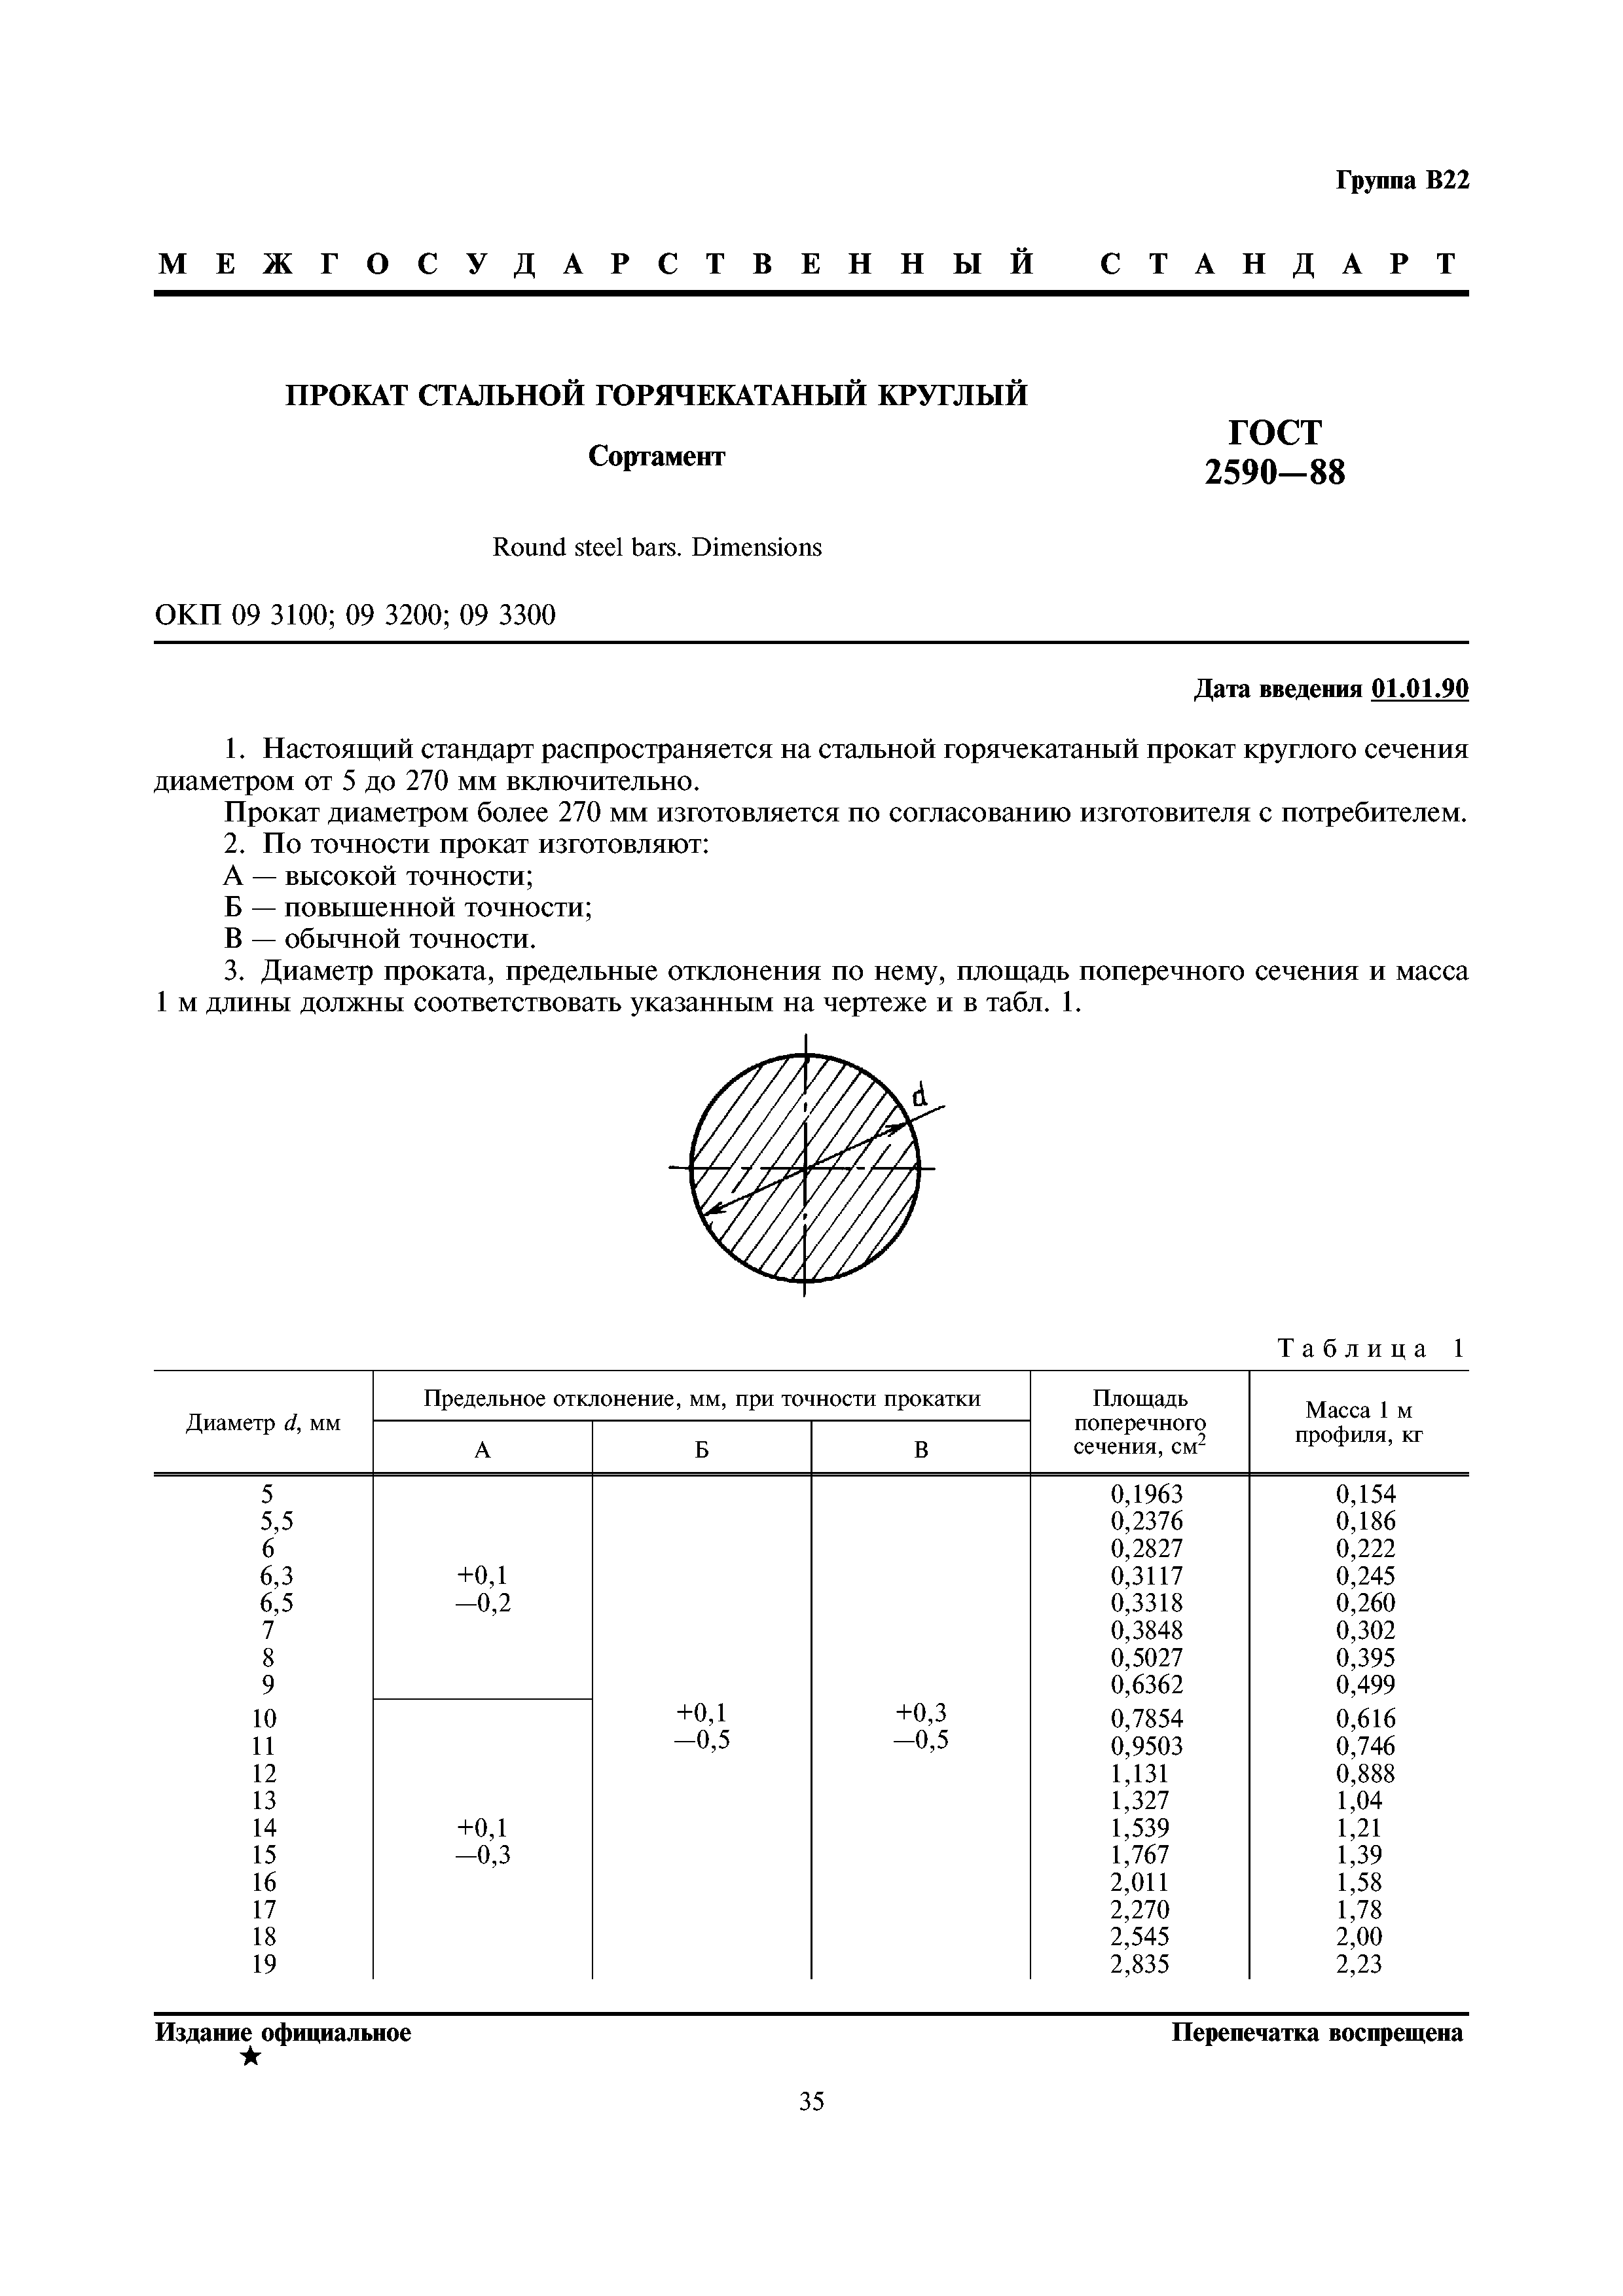 Сортамент круга стального ГОСТ 2590-88